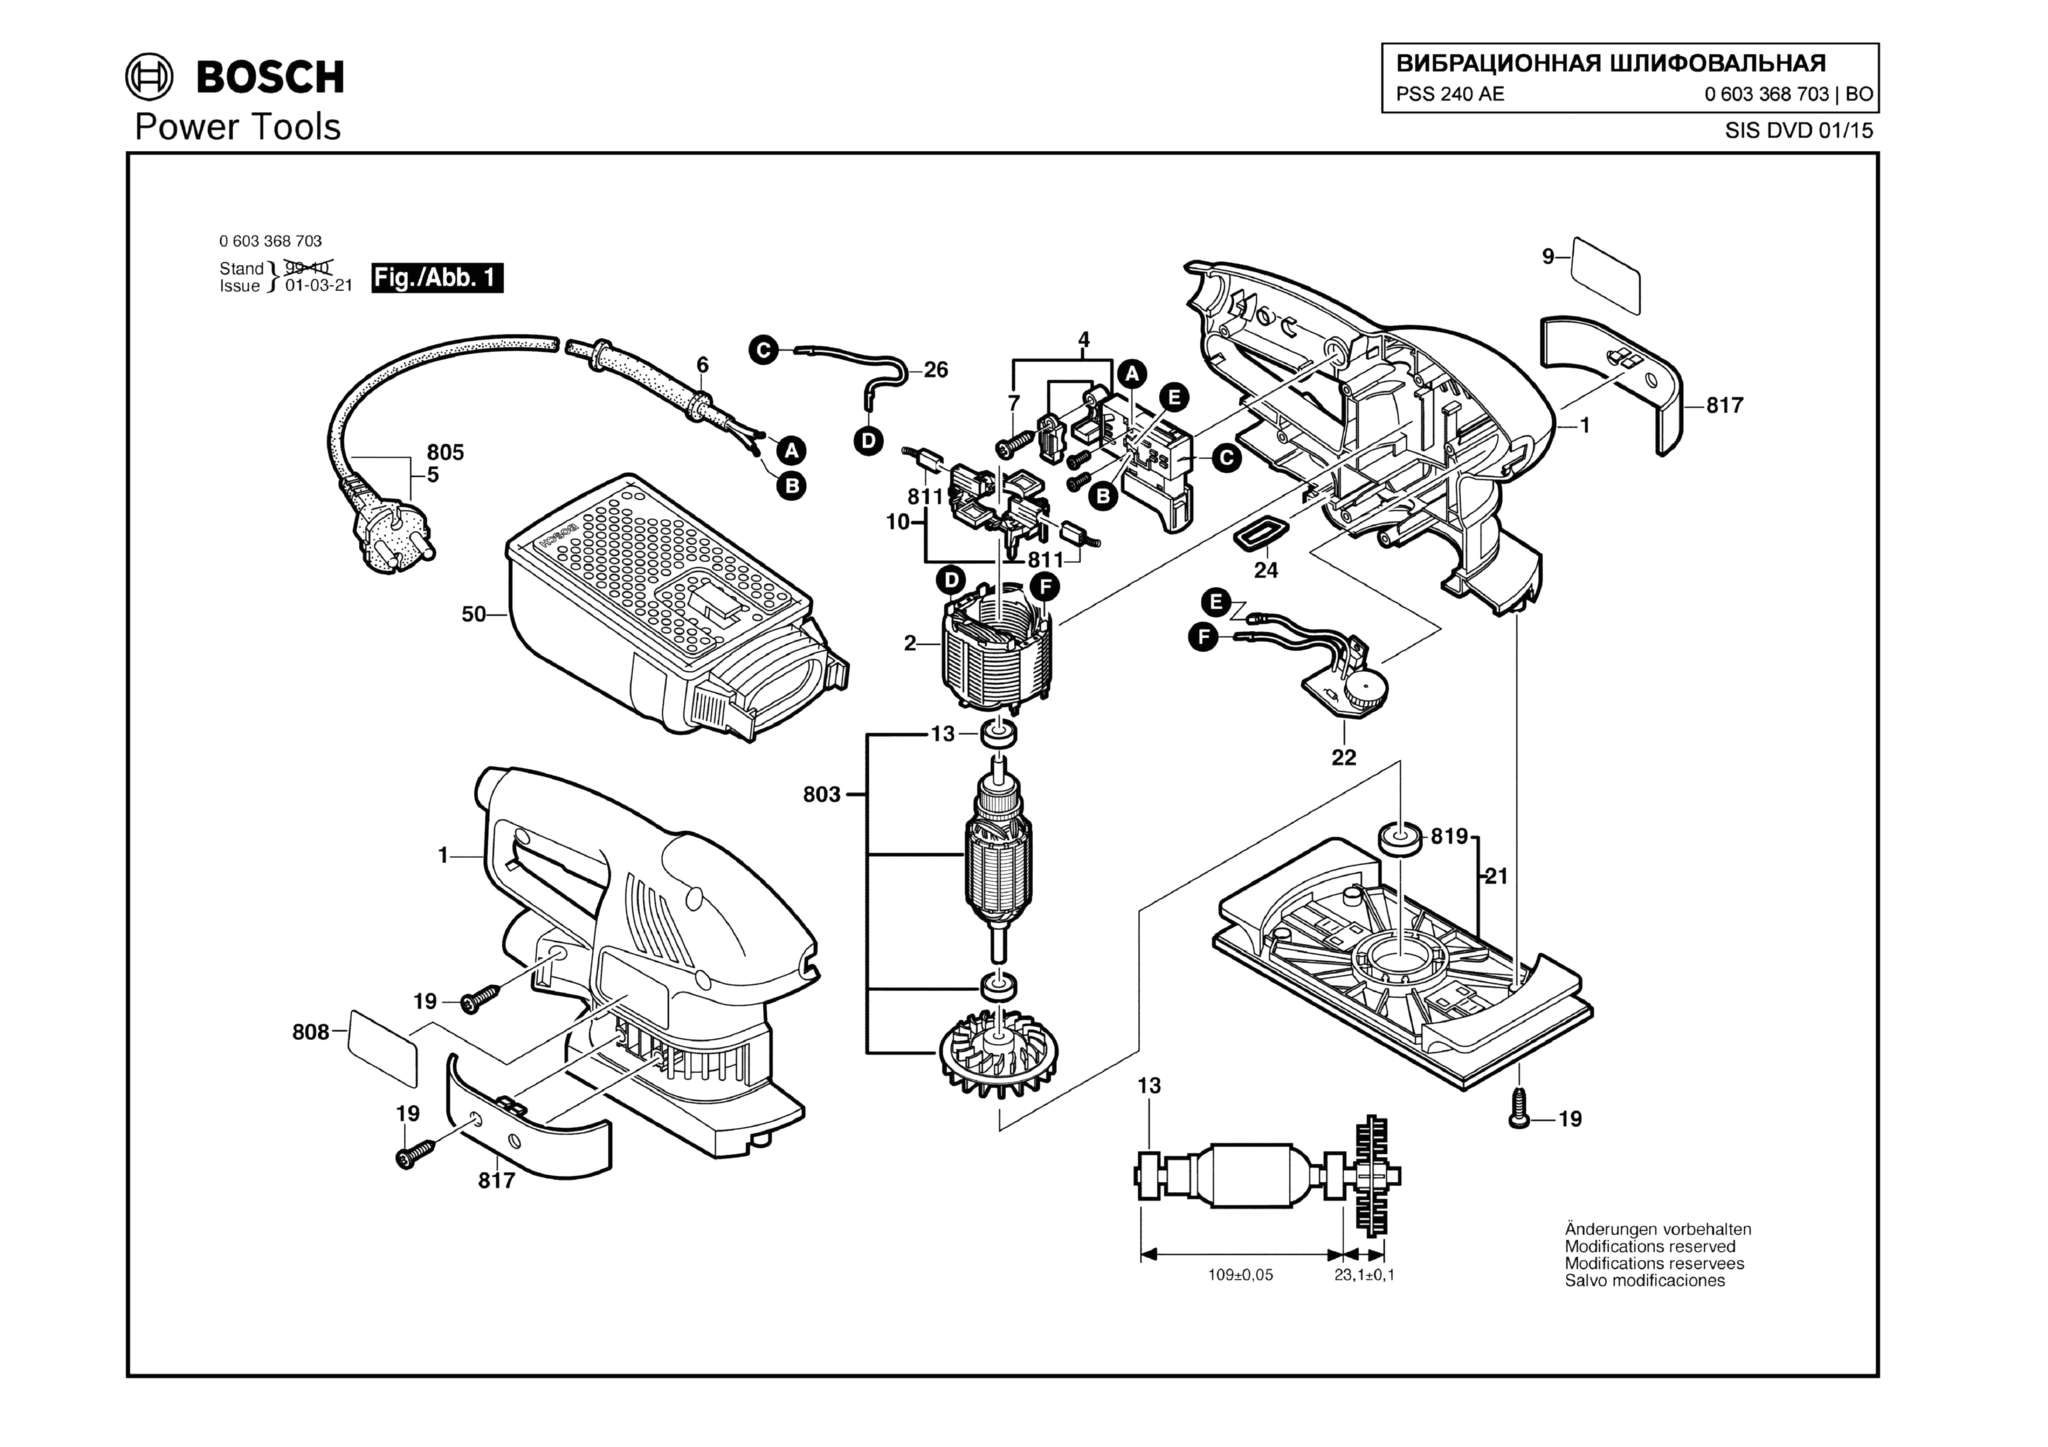 Запчасти, схема и деталировка Bosch PSS 240 AE (ТИП 0603368703)